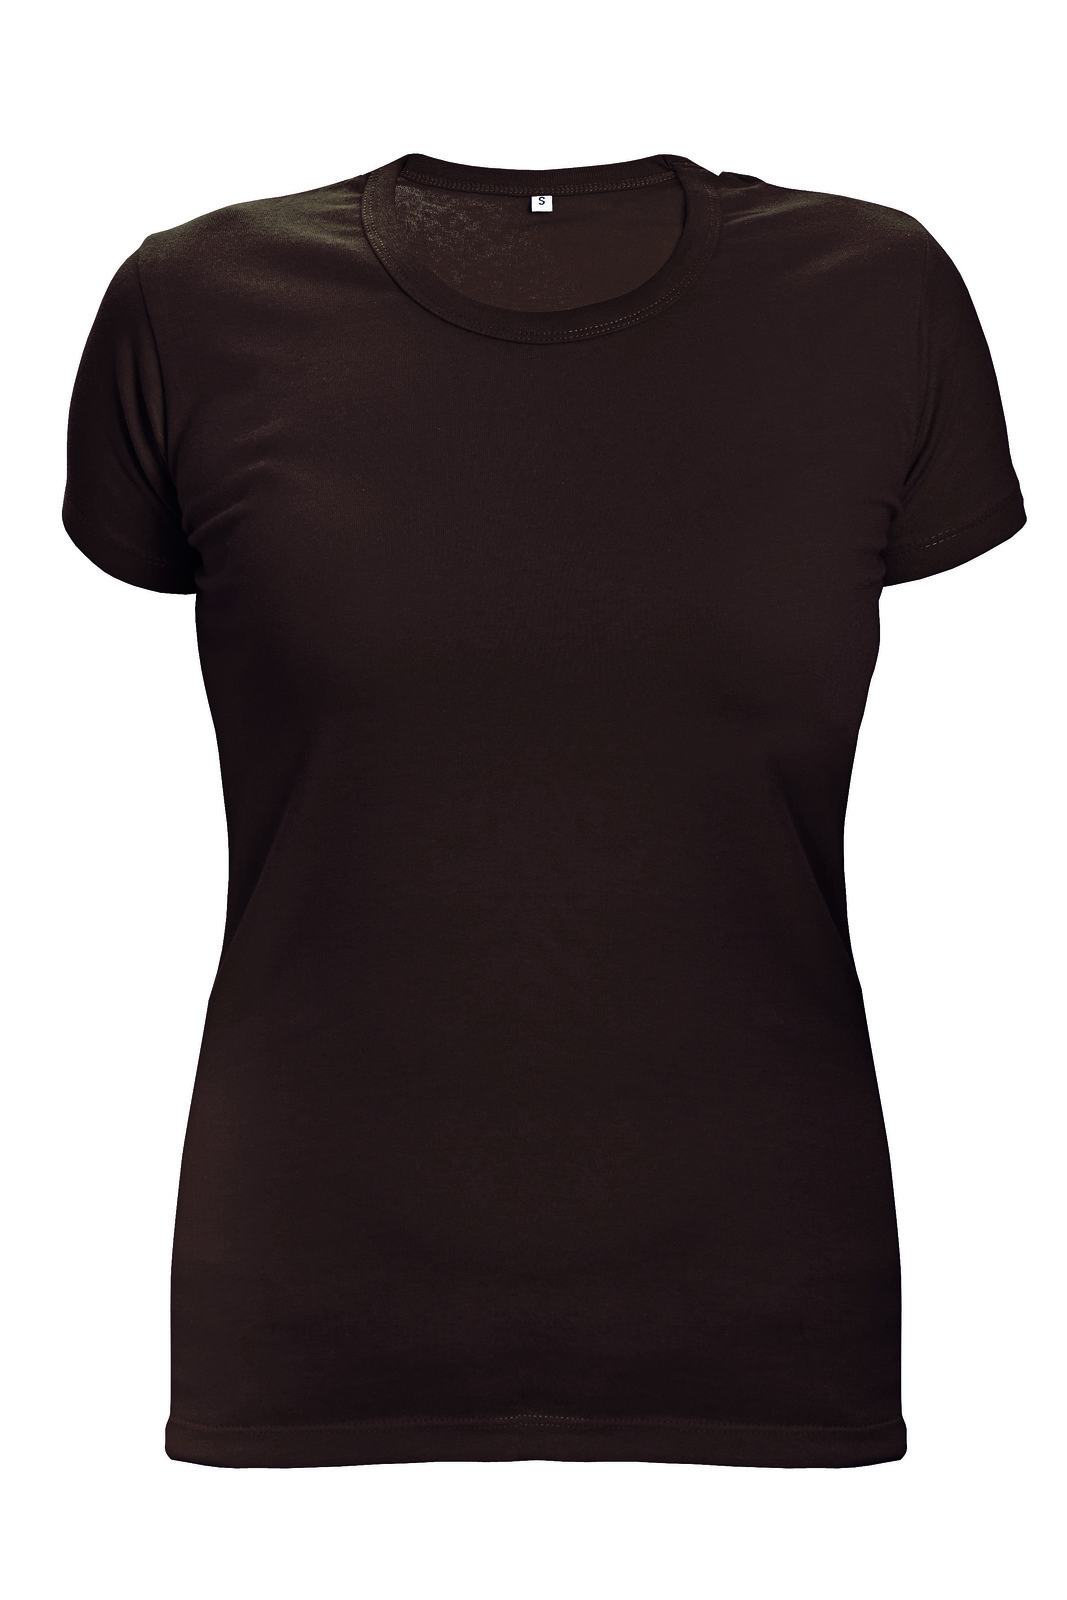 Dámske tričko s krátkym rukávom Surma Lady - veľkosť: S, farba: tmavo hnedá